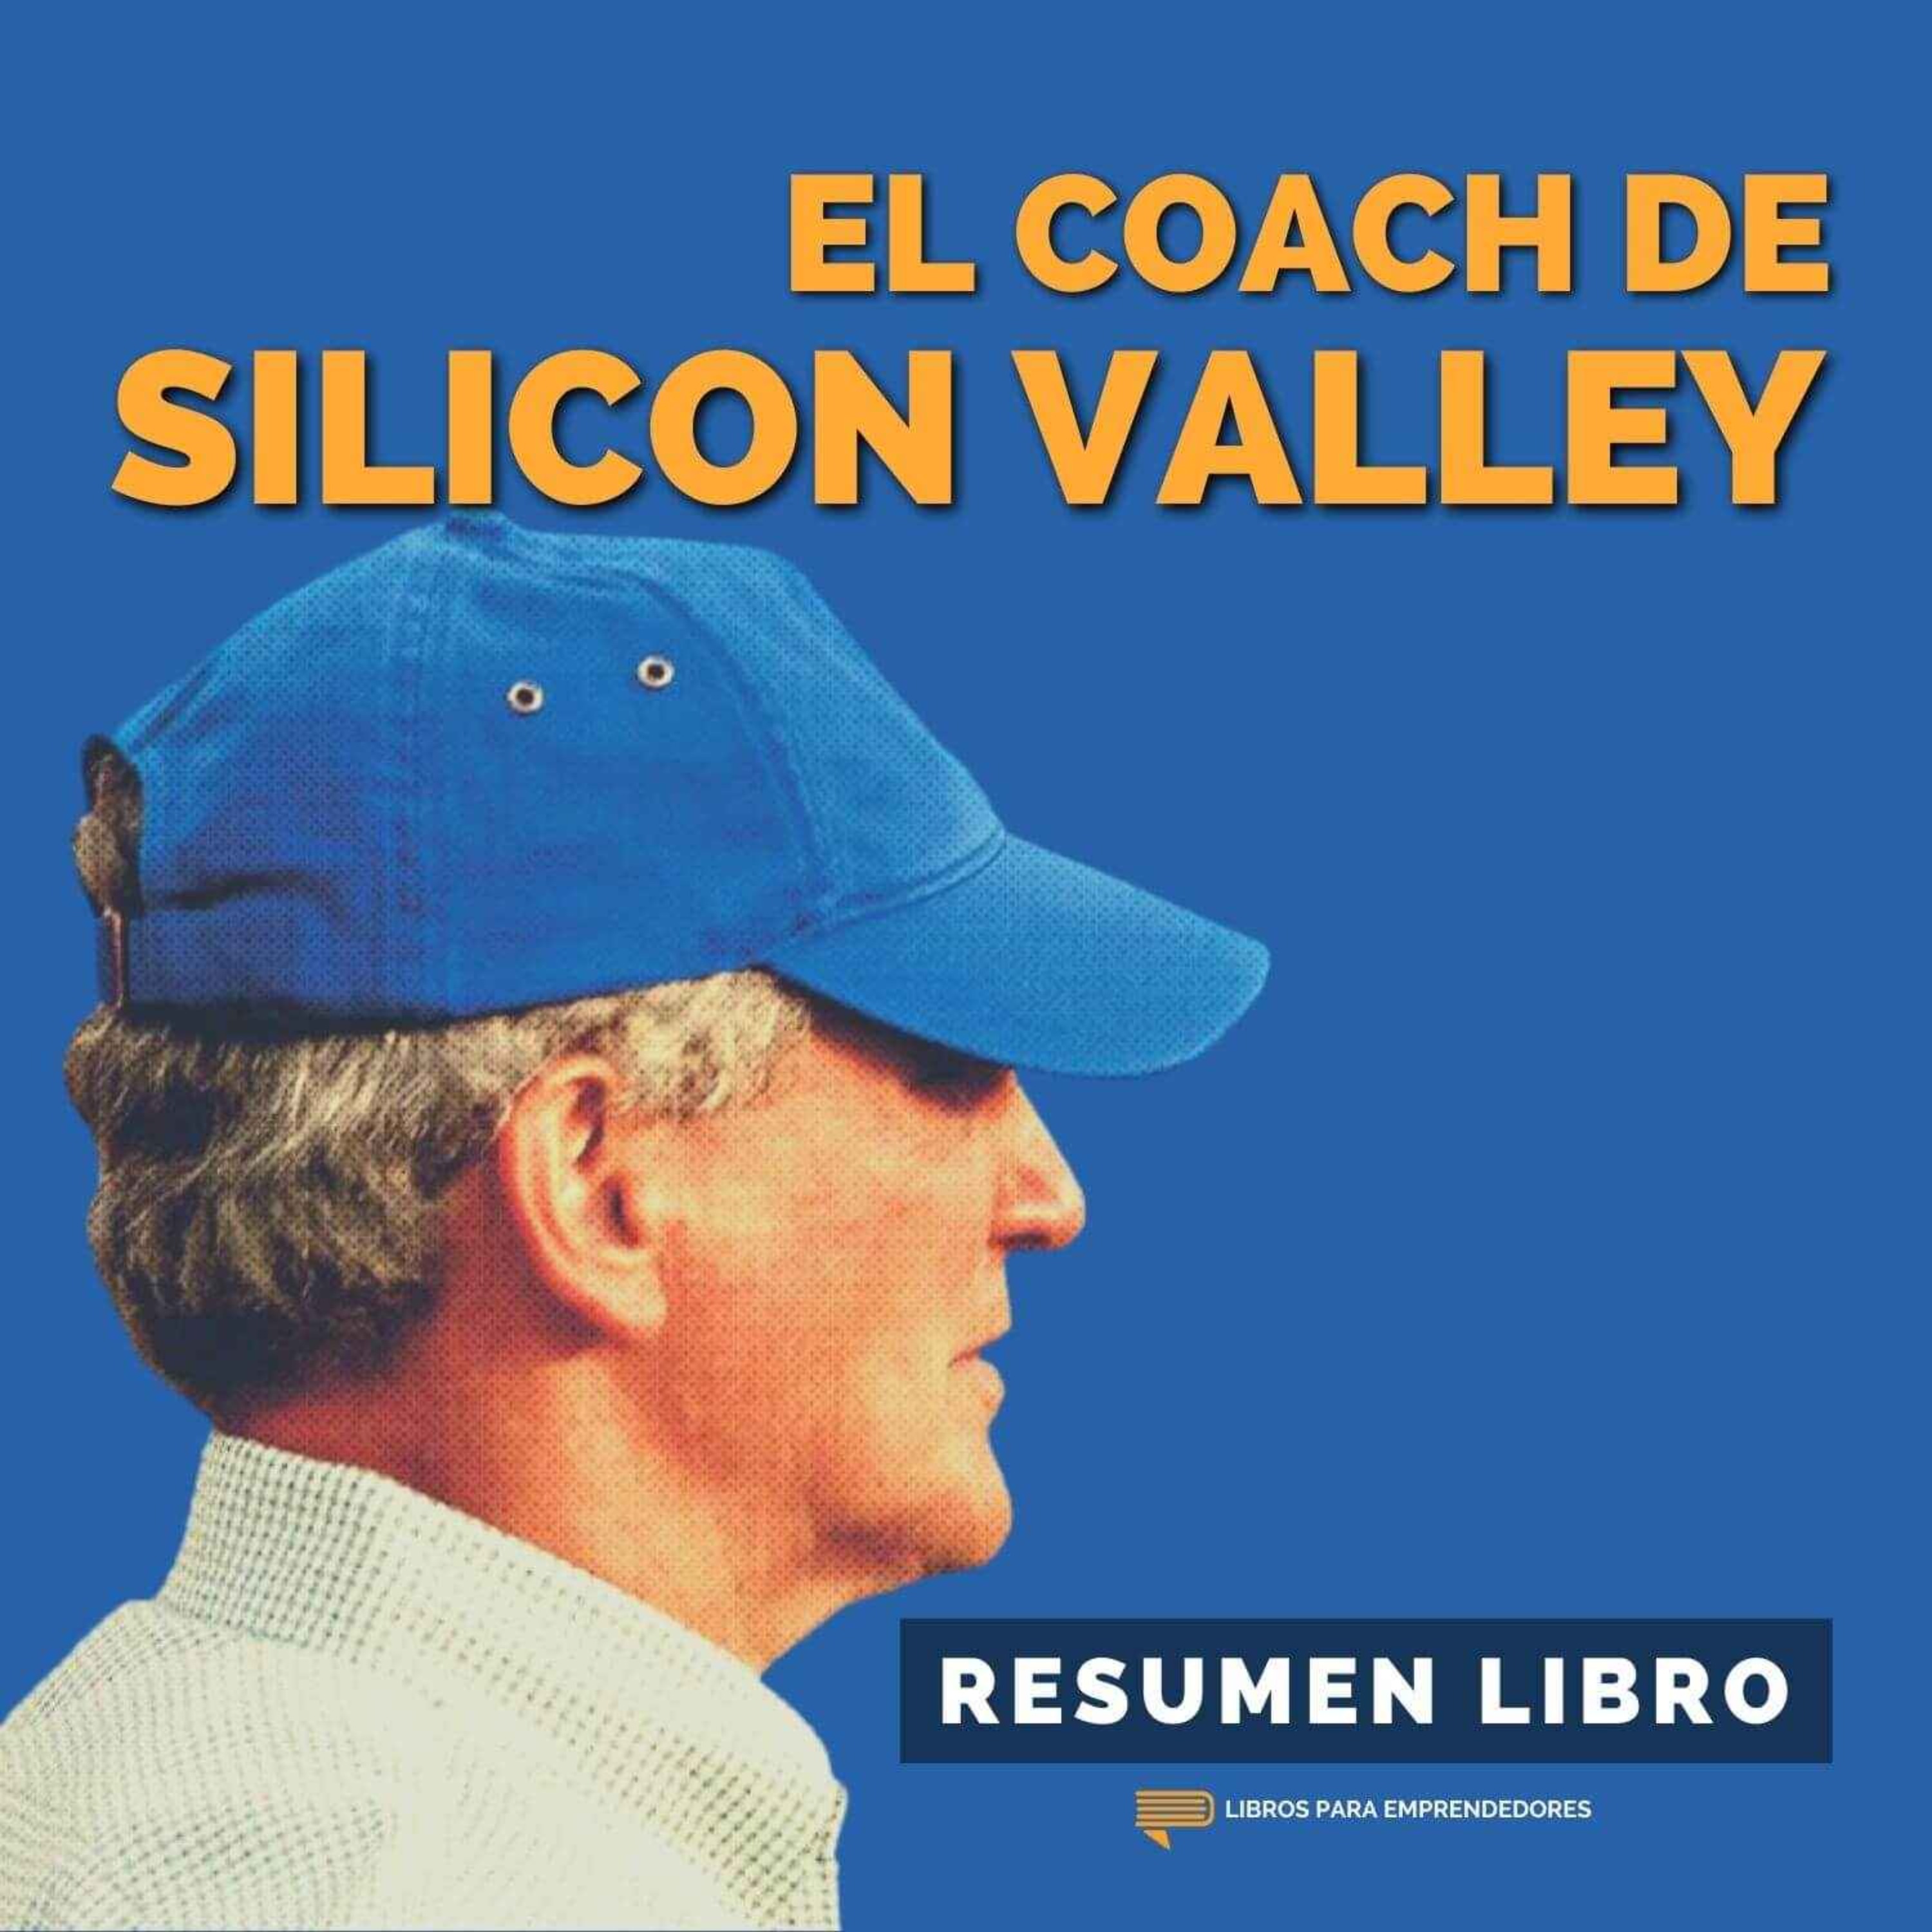 📖 El Coach de Silicon Valley - Un Resumen de Libros para Emprendedores